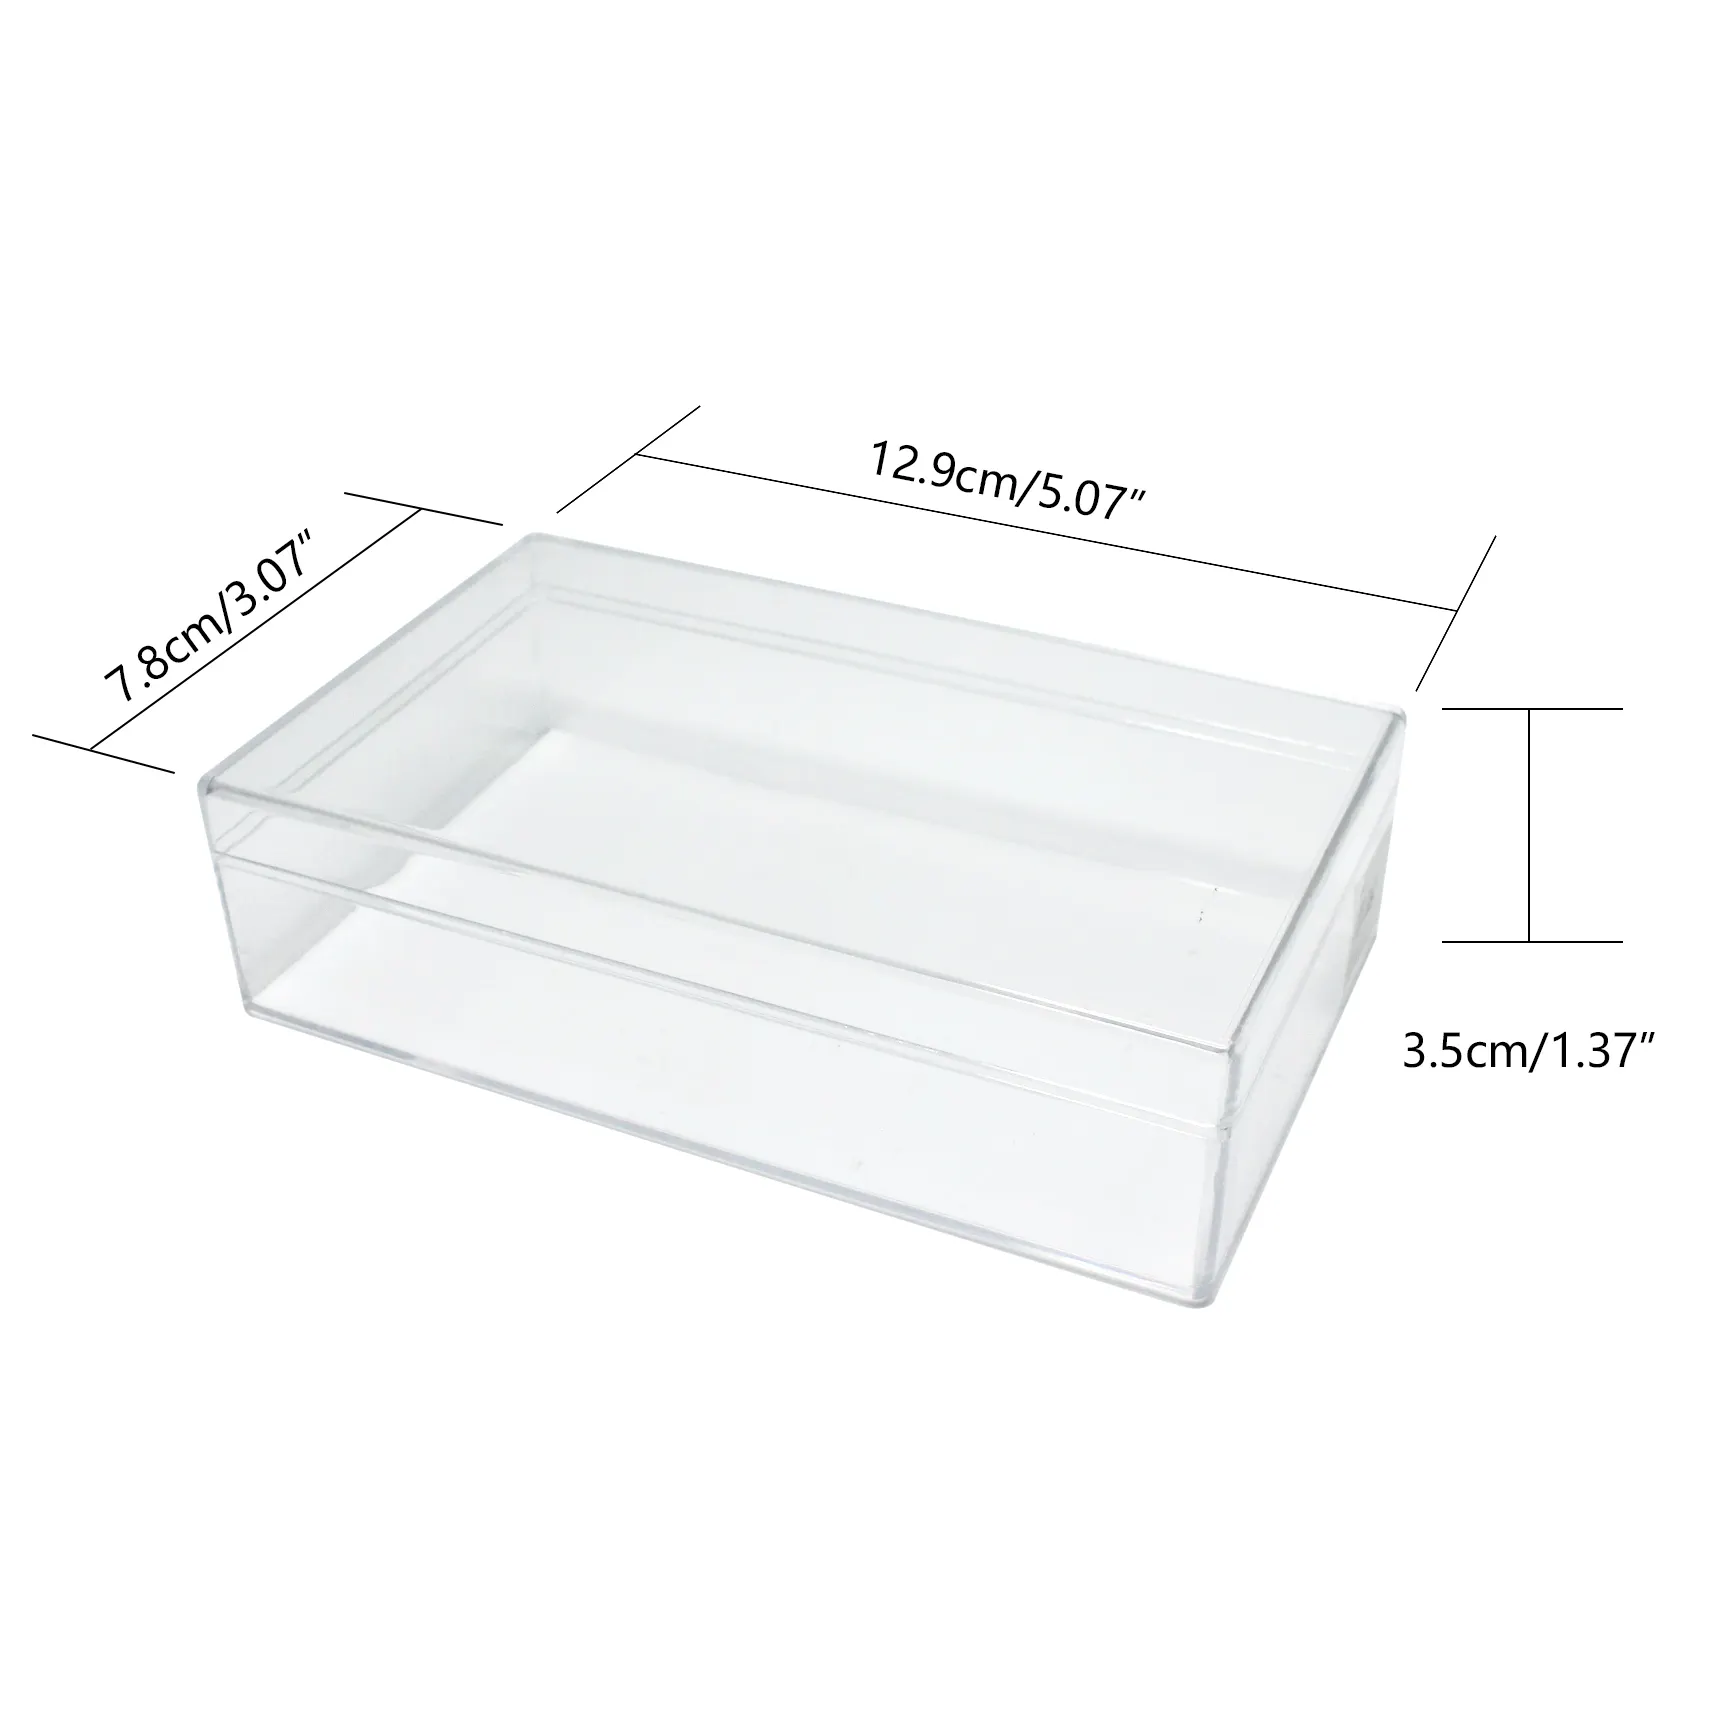 Hot Sell Plastic Clear Aufbewahrung sbox Transparent Display Aufbewahrung koffer Benutzer definierte Größe